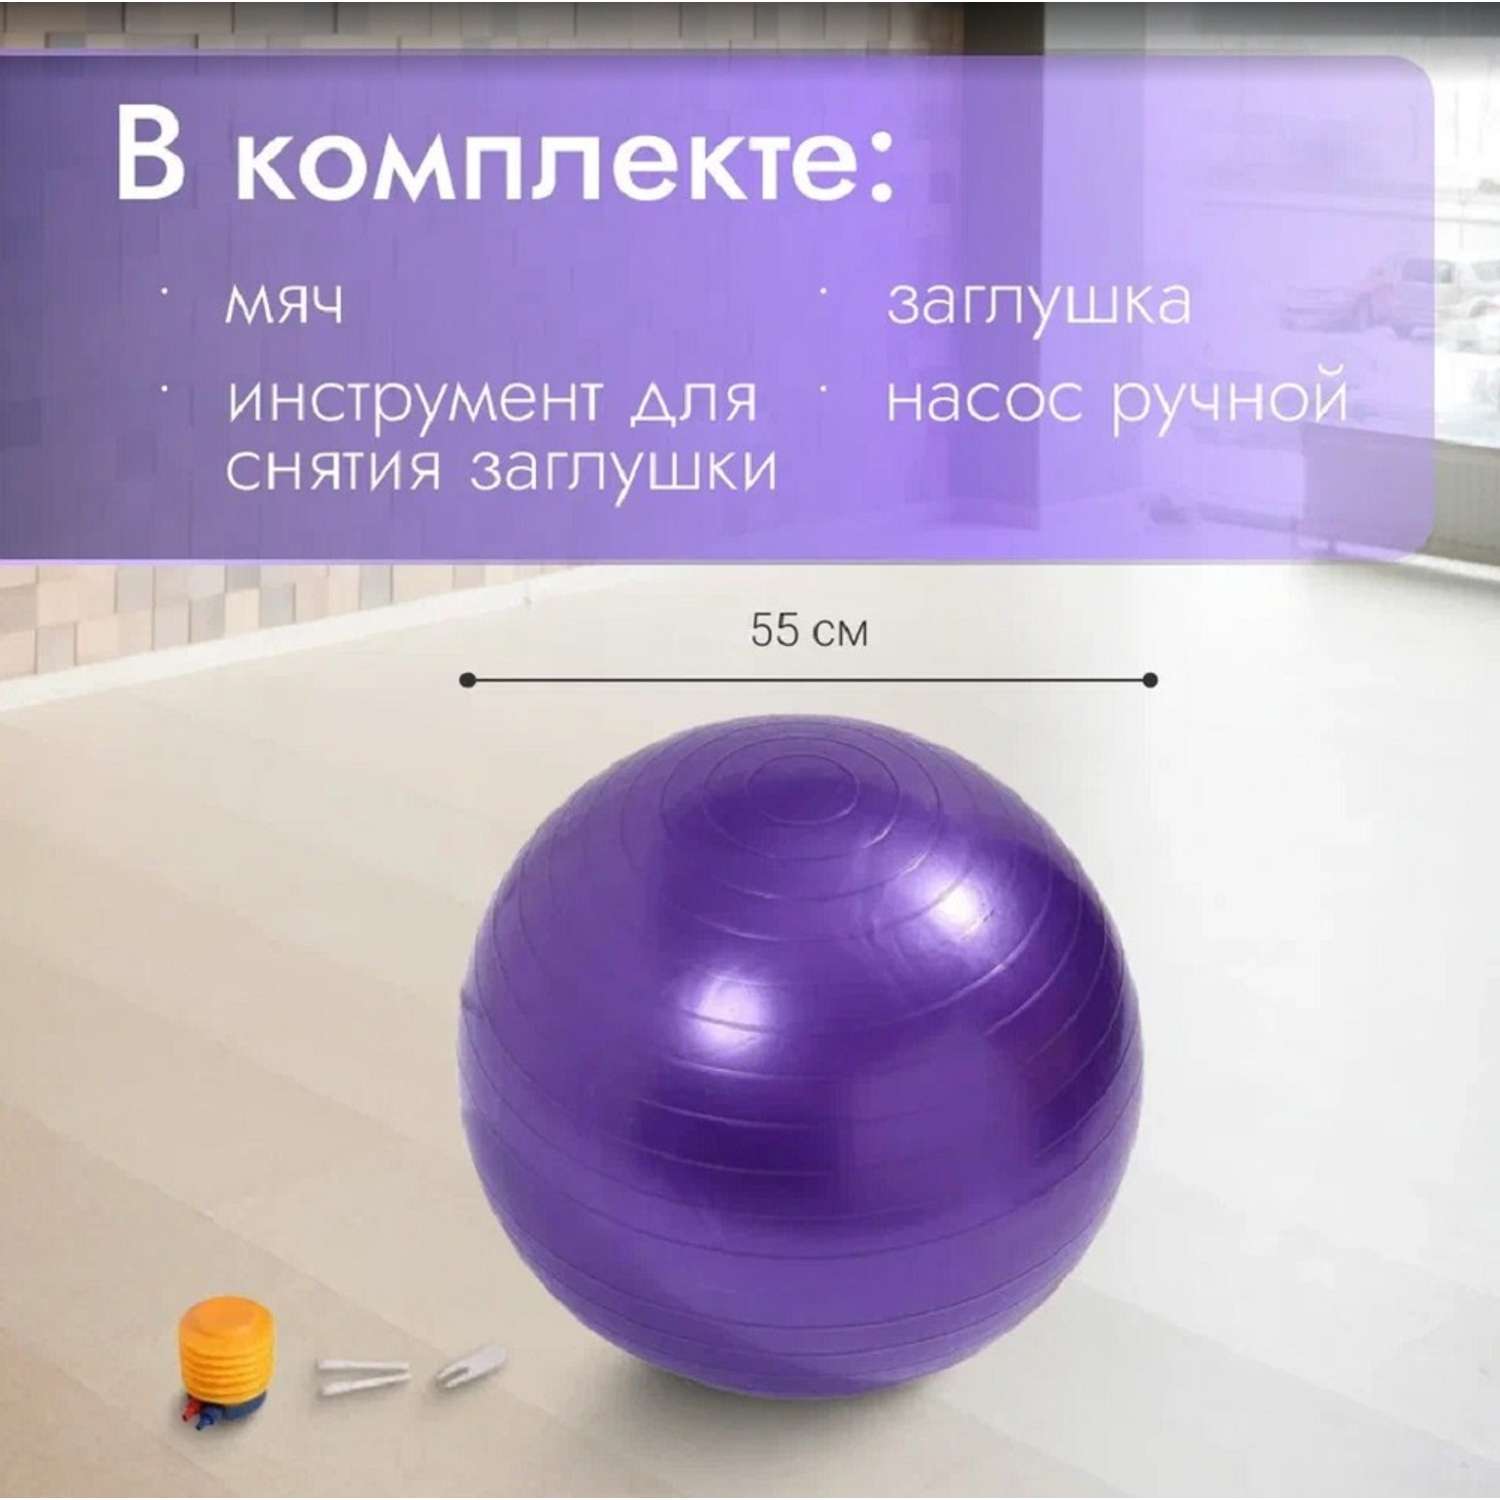 Мяч Nonstopika ZDK надувной для йоги цвет фиолетовый - фото 7